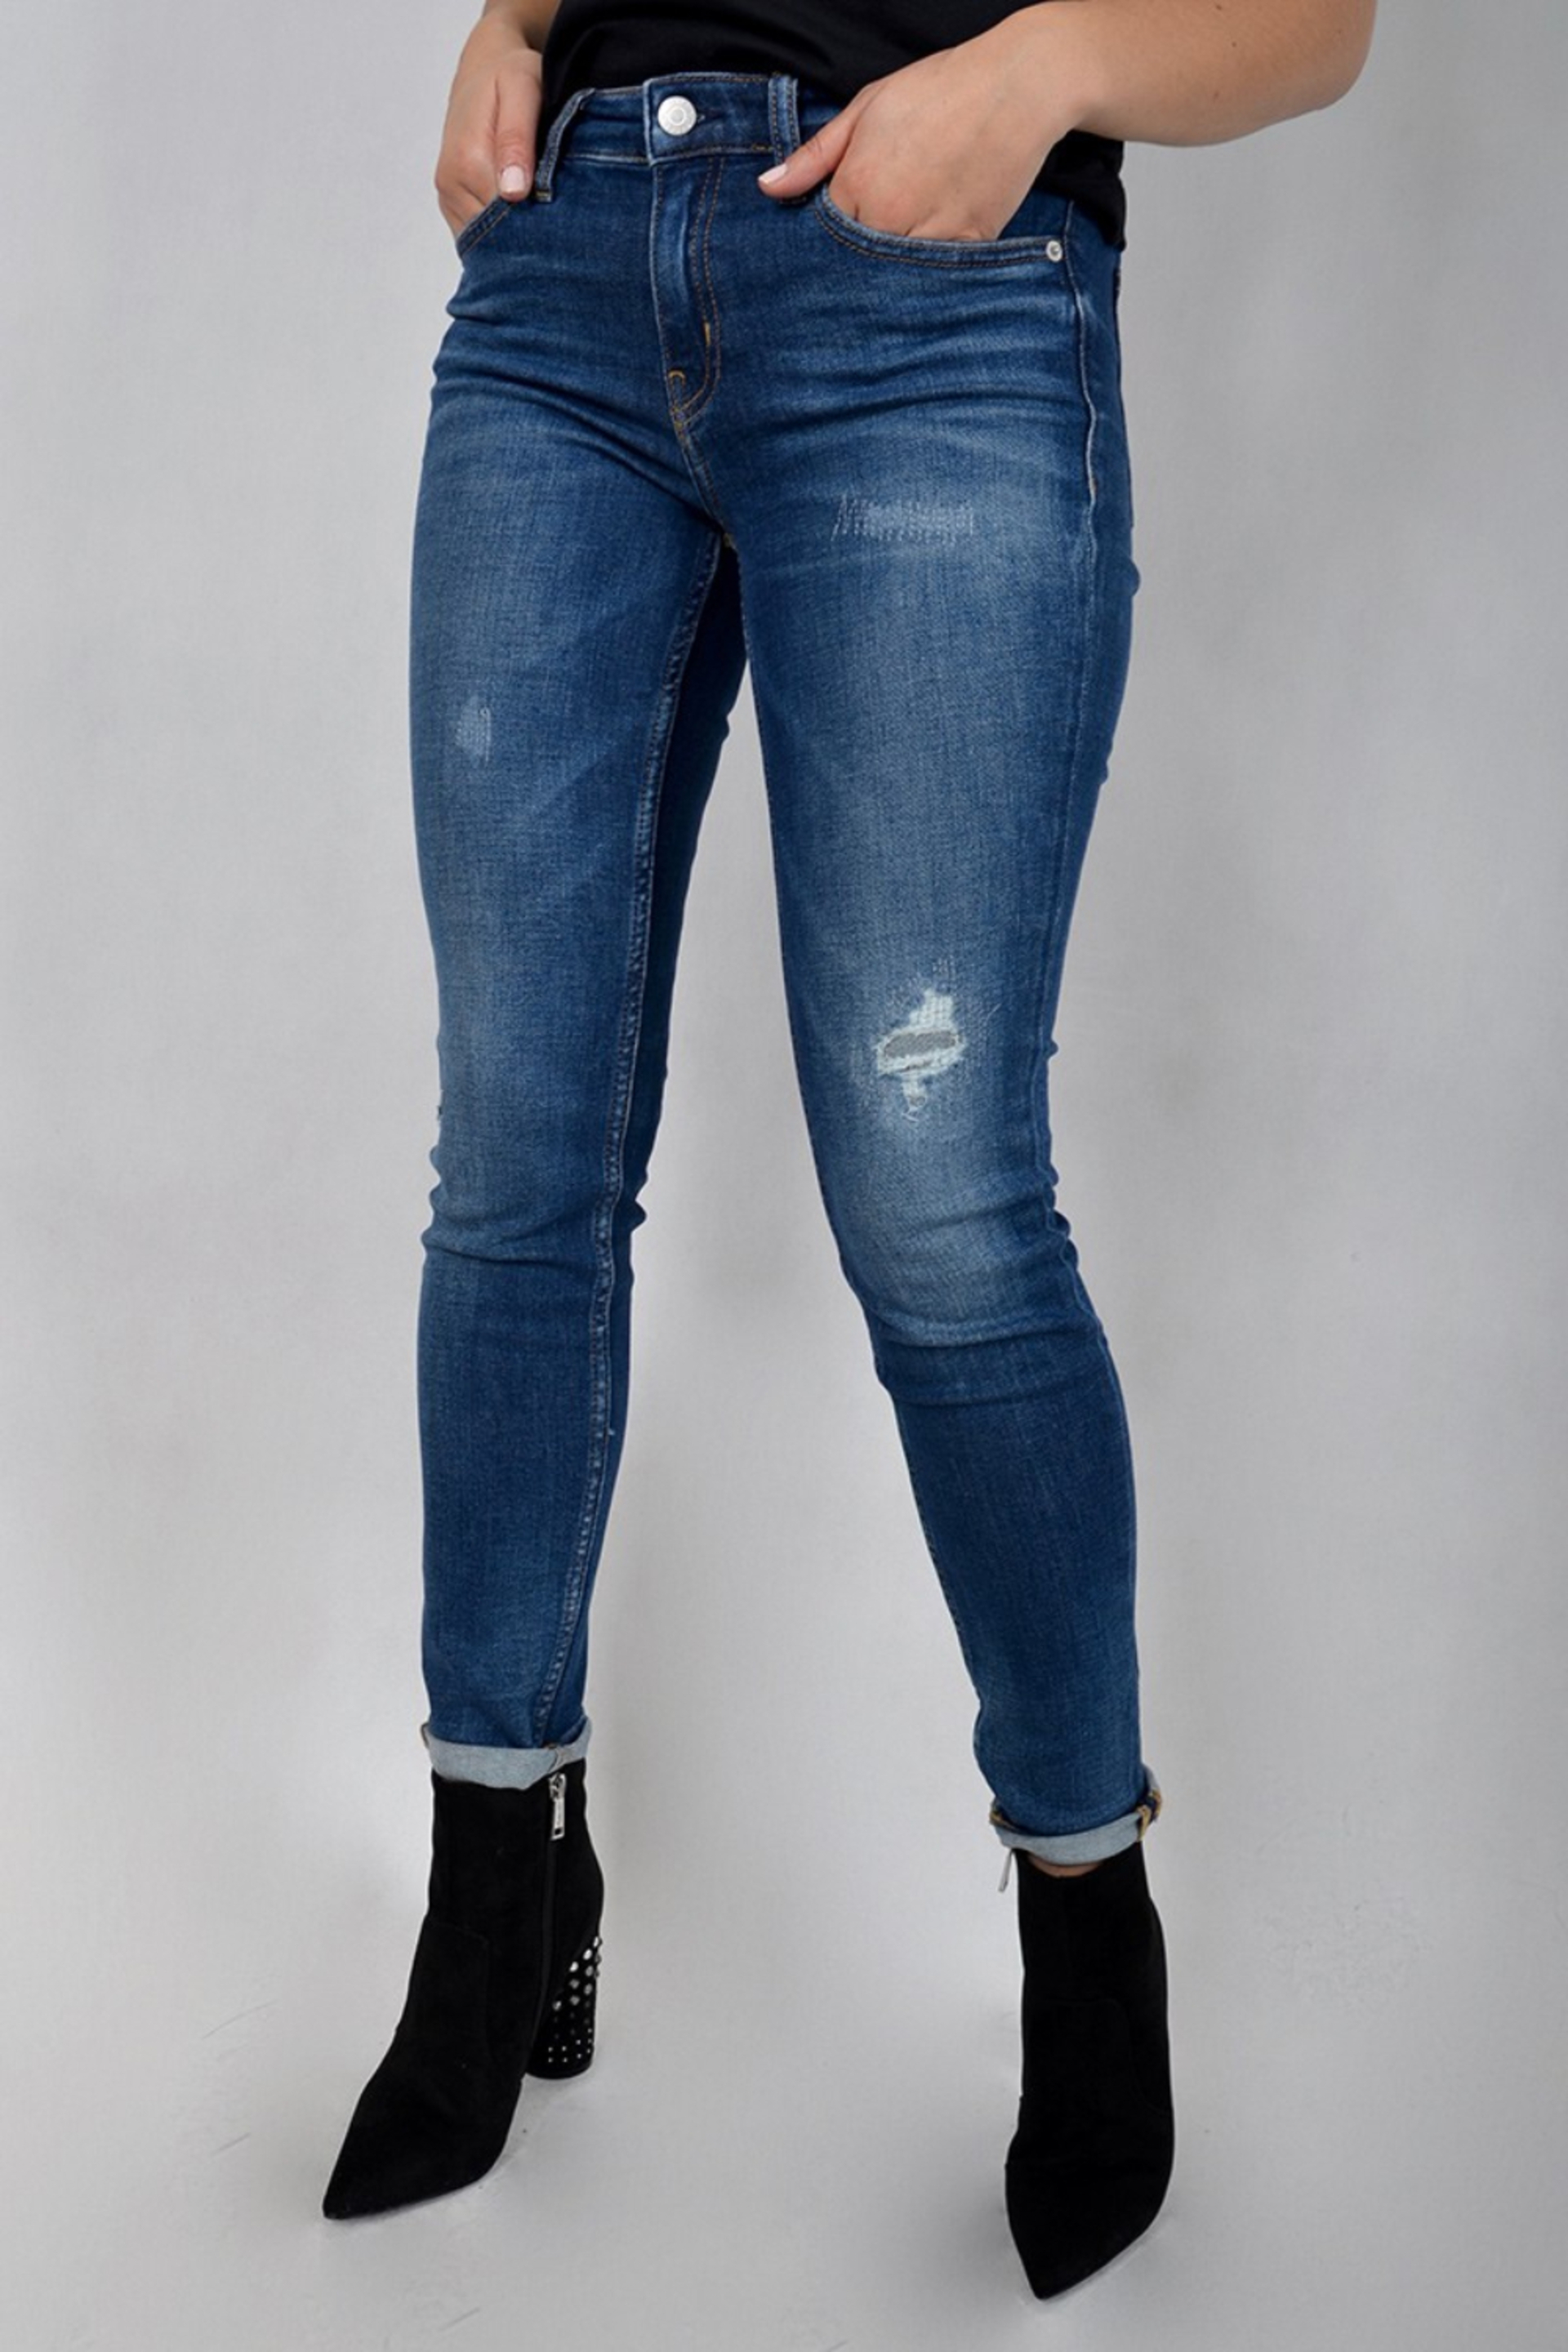 Calvin Klein dámské modré džíny - 30/34 (911)